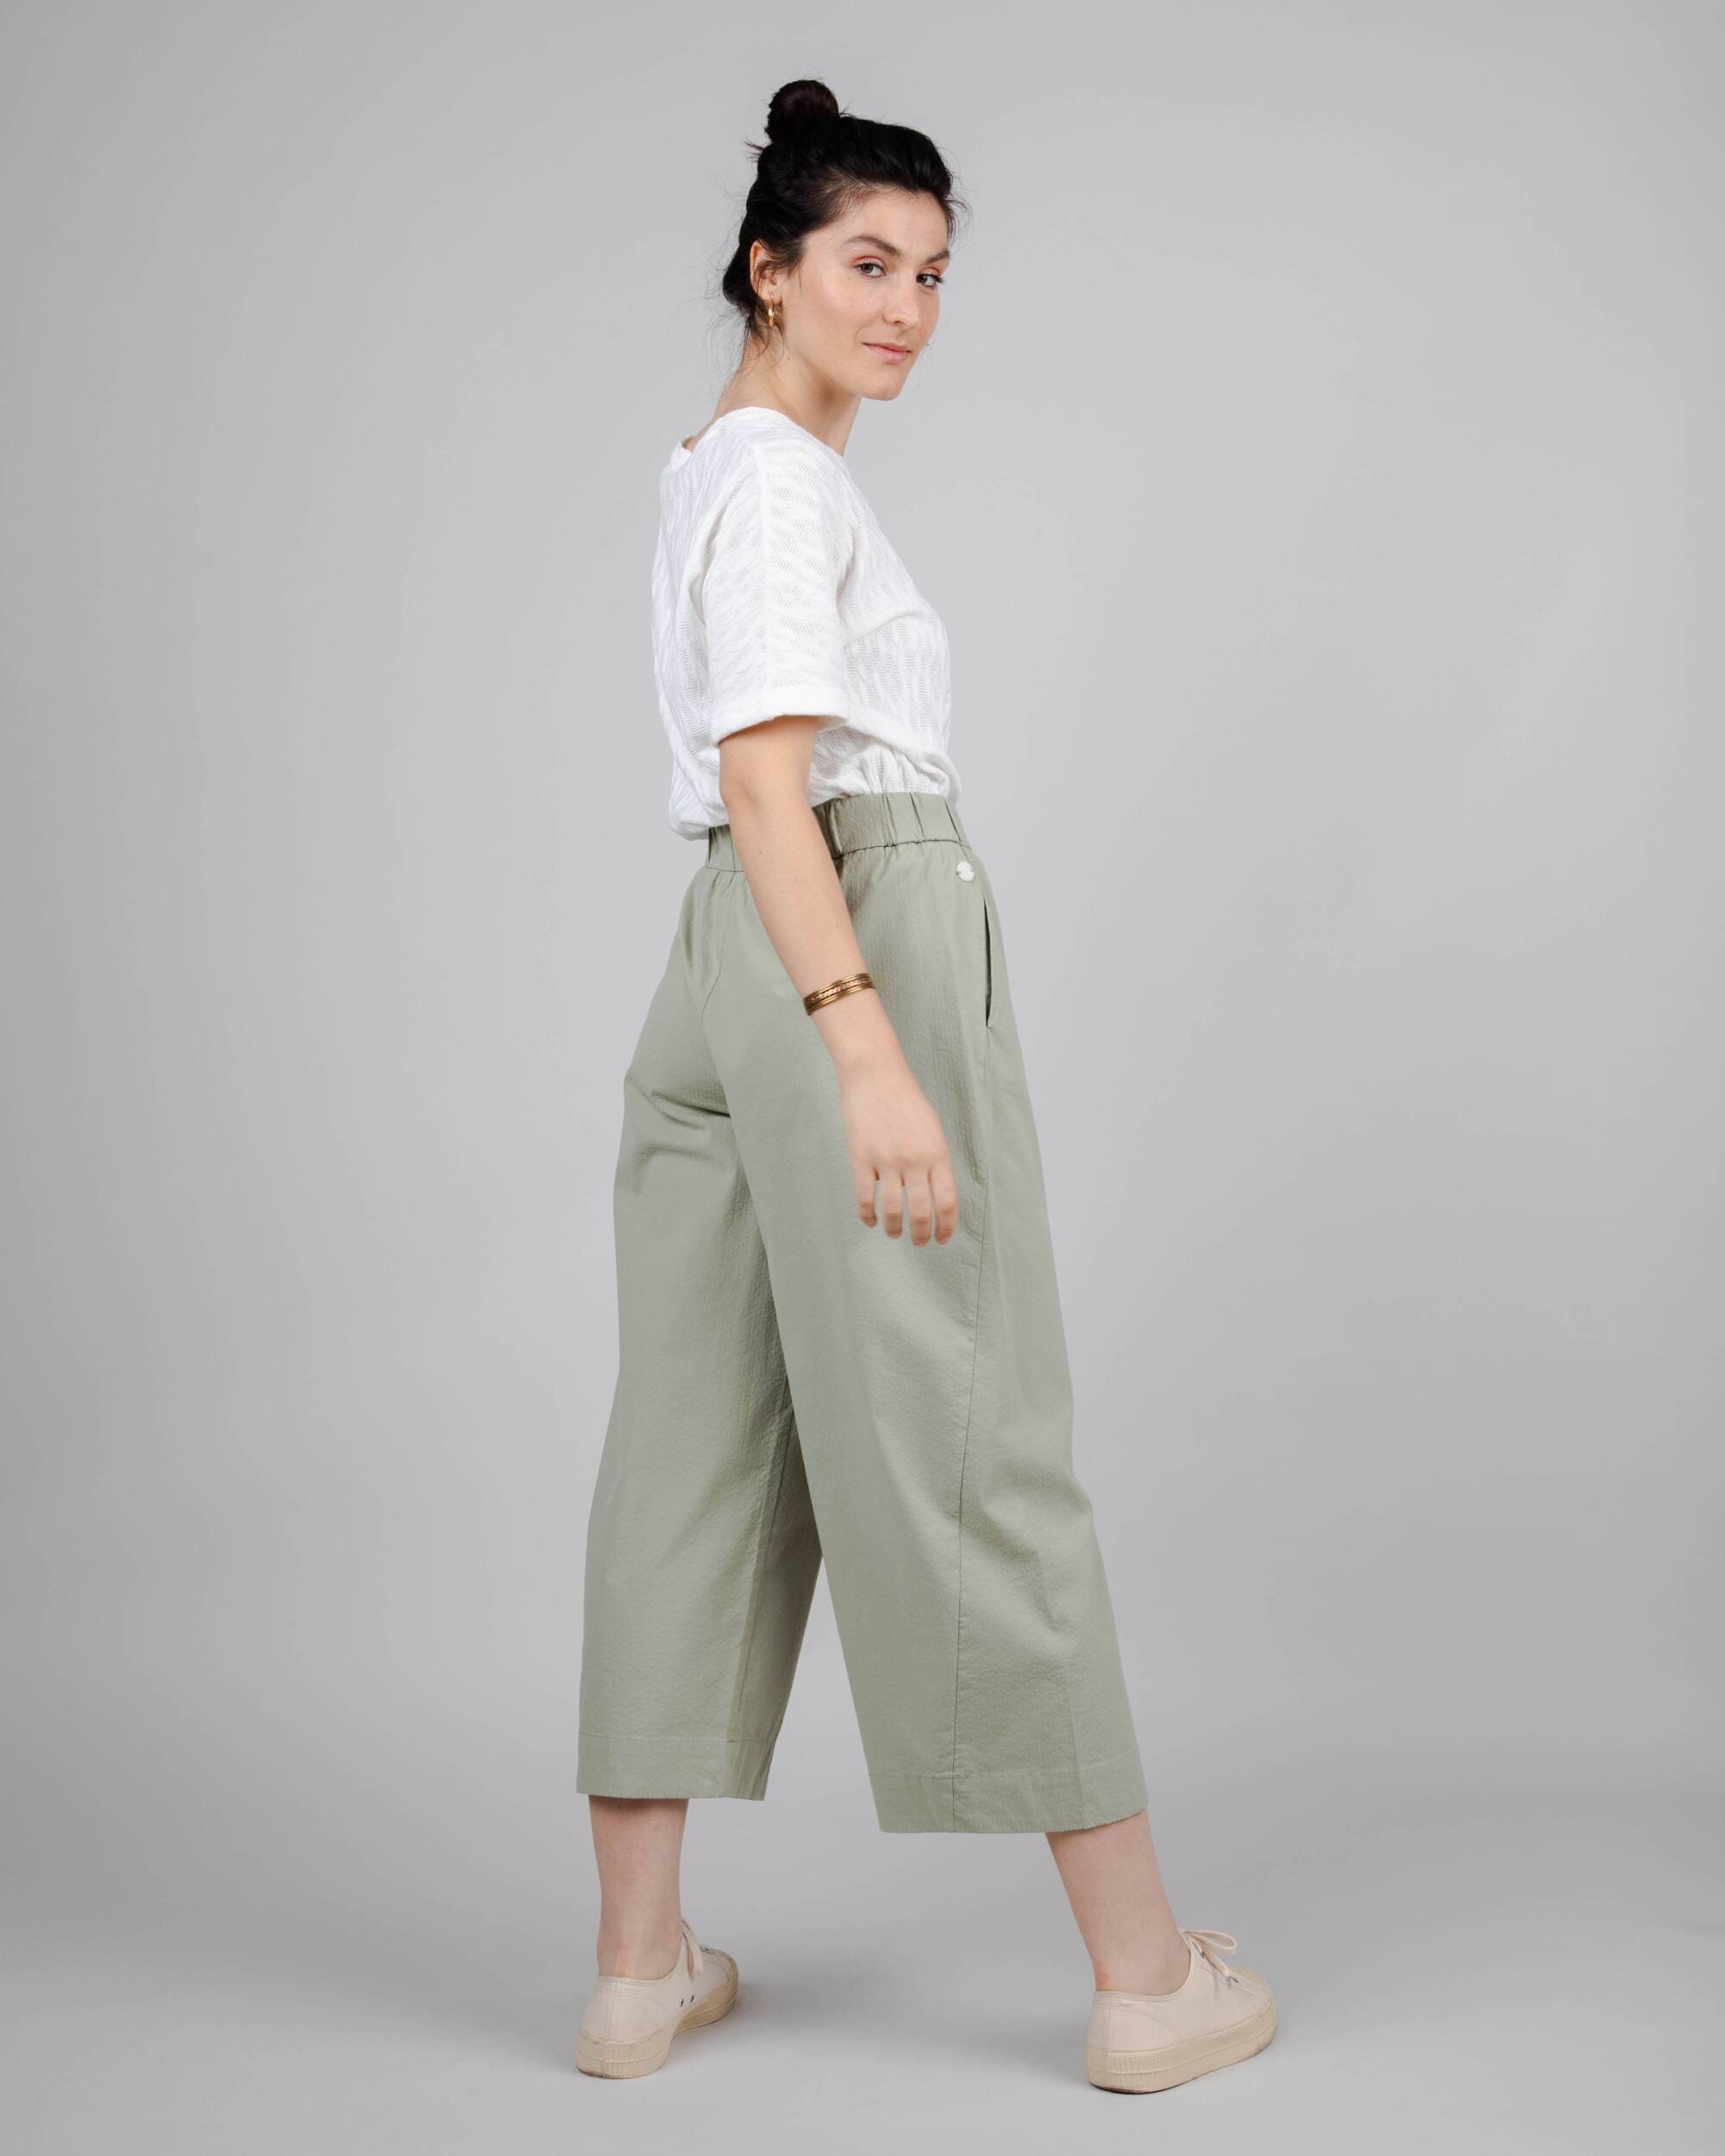 Brava Fabrics pantalón Pantalón Picnic Oversize Kakhi de Algodón Orgánico moda sostenible moda ética